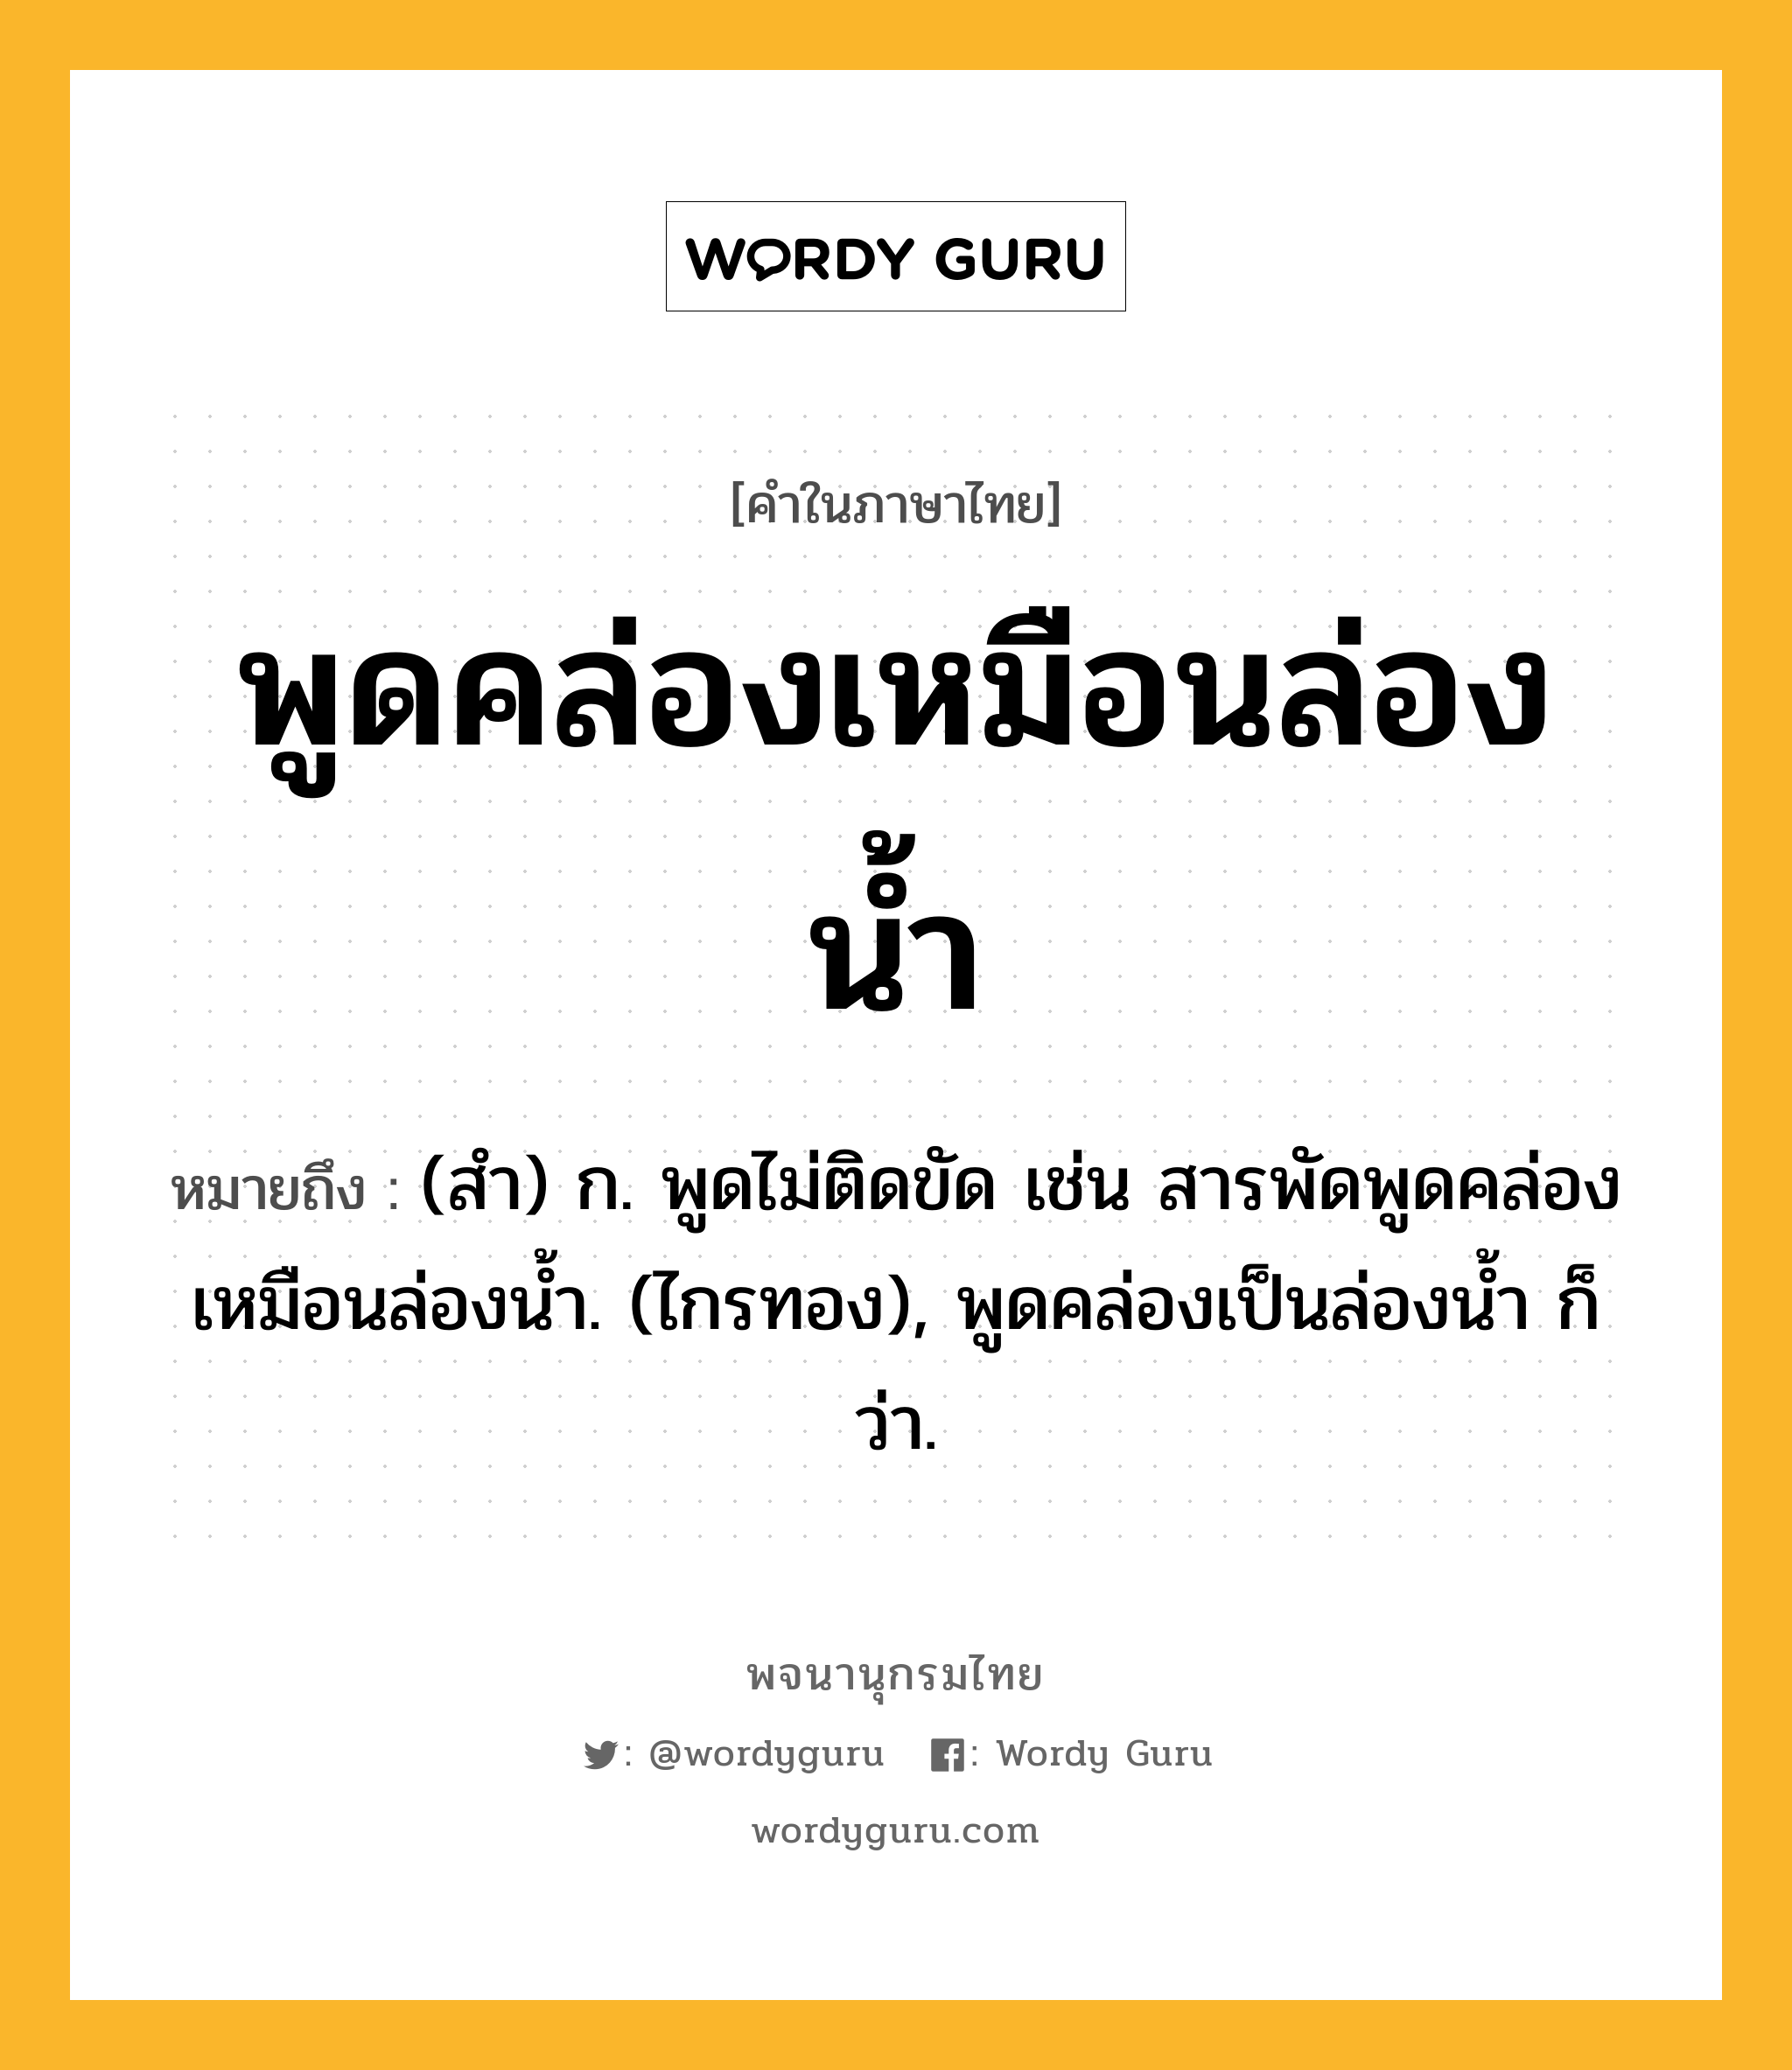 พูดคล่องเหมือนล่องน้ำ หมายถึงอะไร?, คำในภาษาไทย พูดคล่องเหมือนล่องน้ำ หมายถึง (สํา) ก. พูดไม่ติดขัด เช่น สารพัดพูดคล่องเหมือนล่องนํ้า. (ไกรทอง), พูดคล่องเป็นล่องนํ้า ก็ว่า.